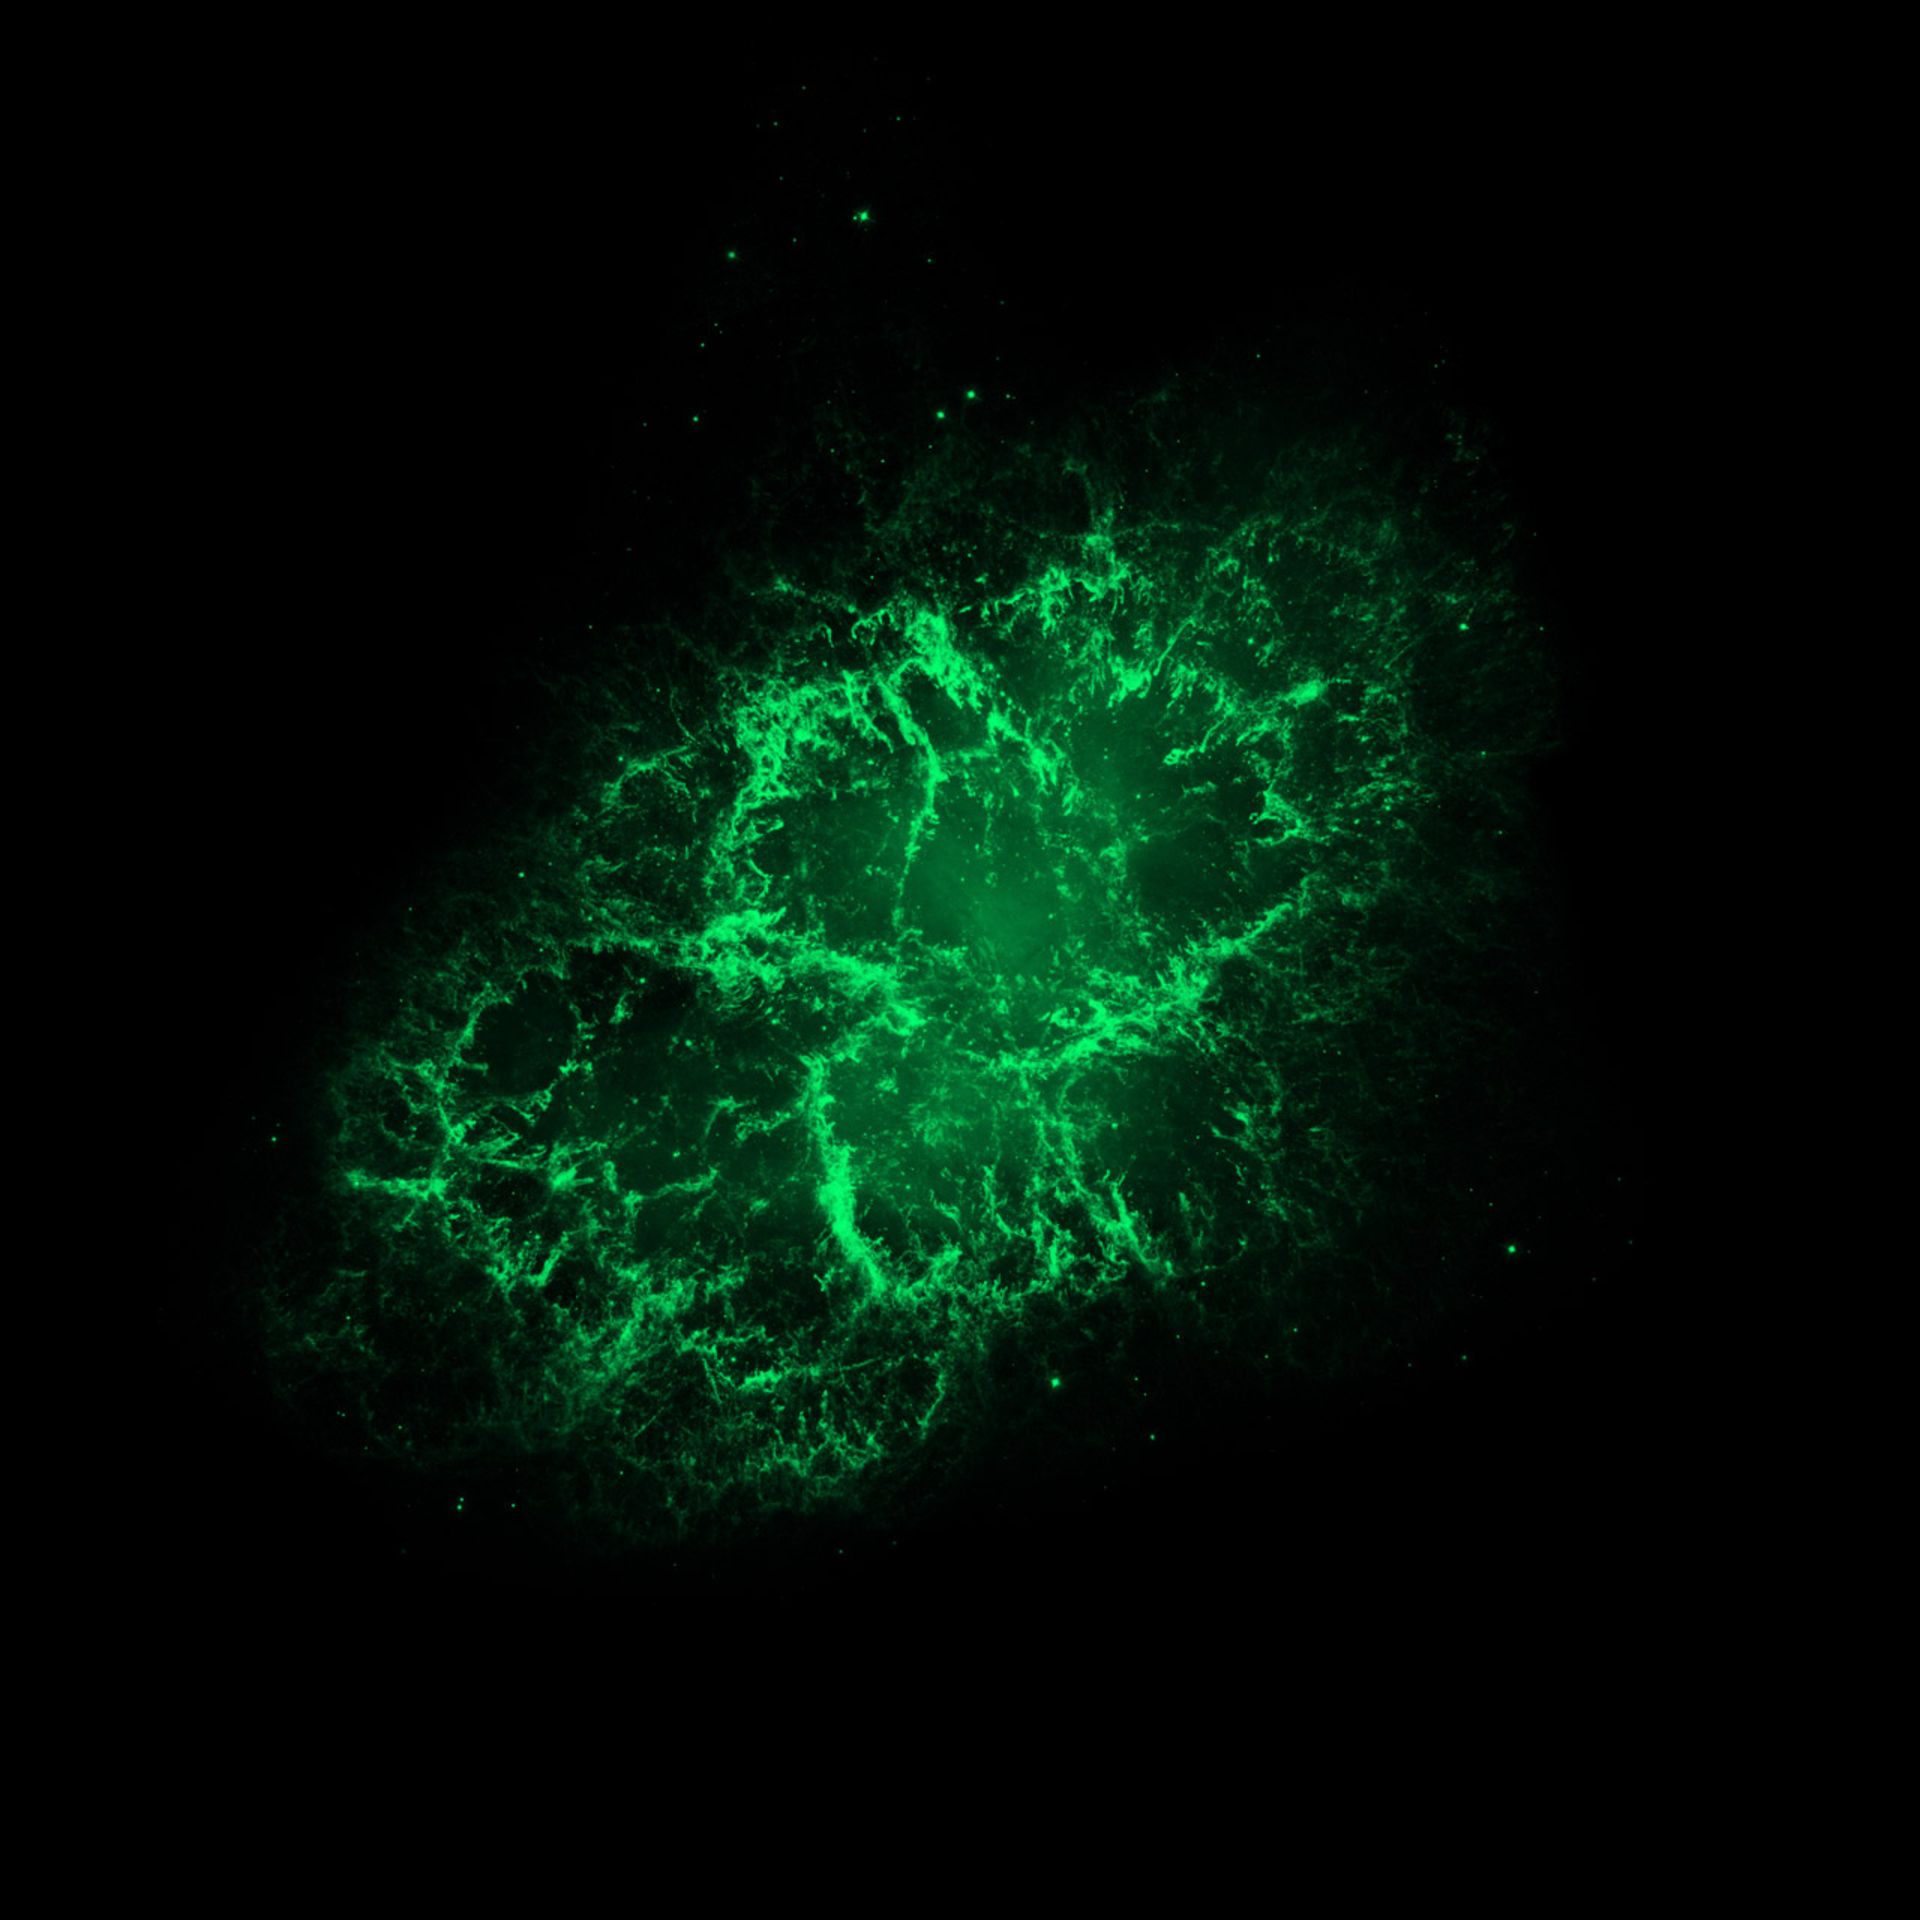 سحابی خرچنگ در نور مرئی (تلسکوپ فضایی هابل)